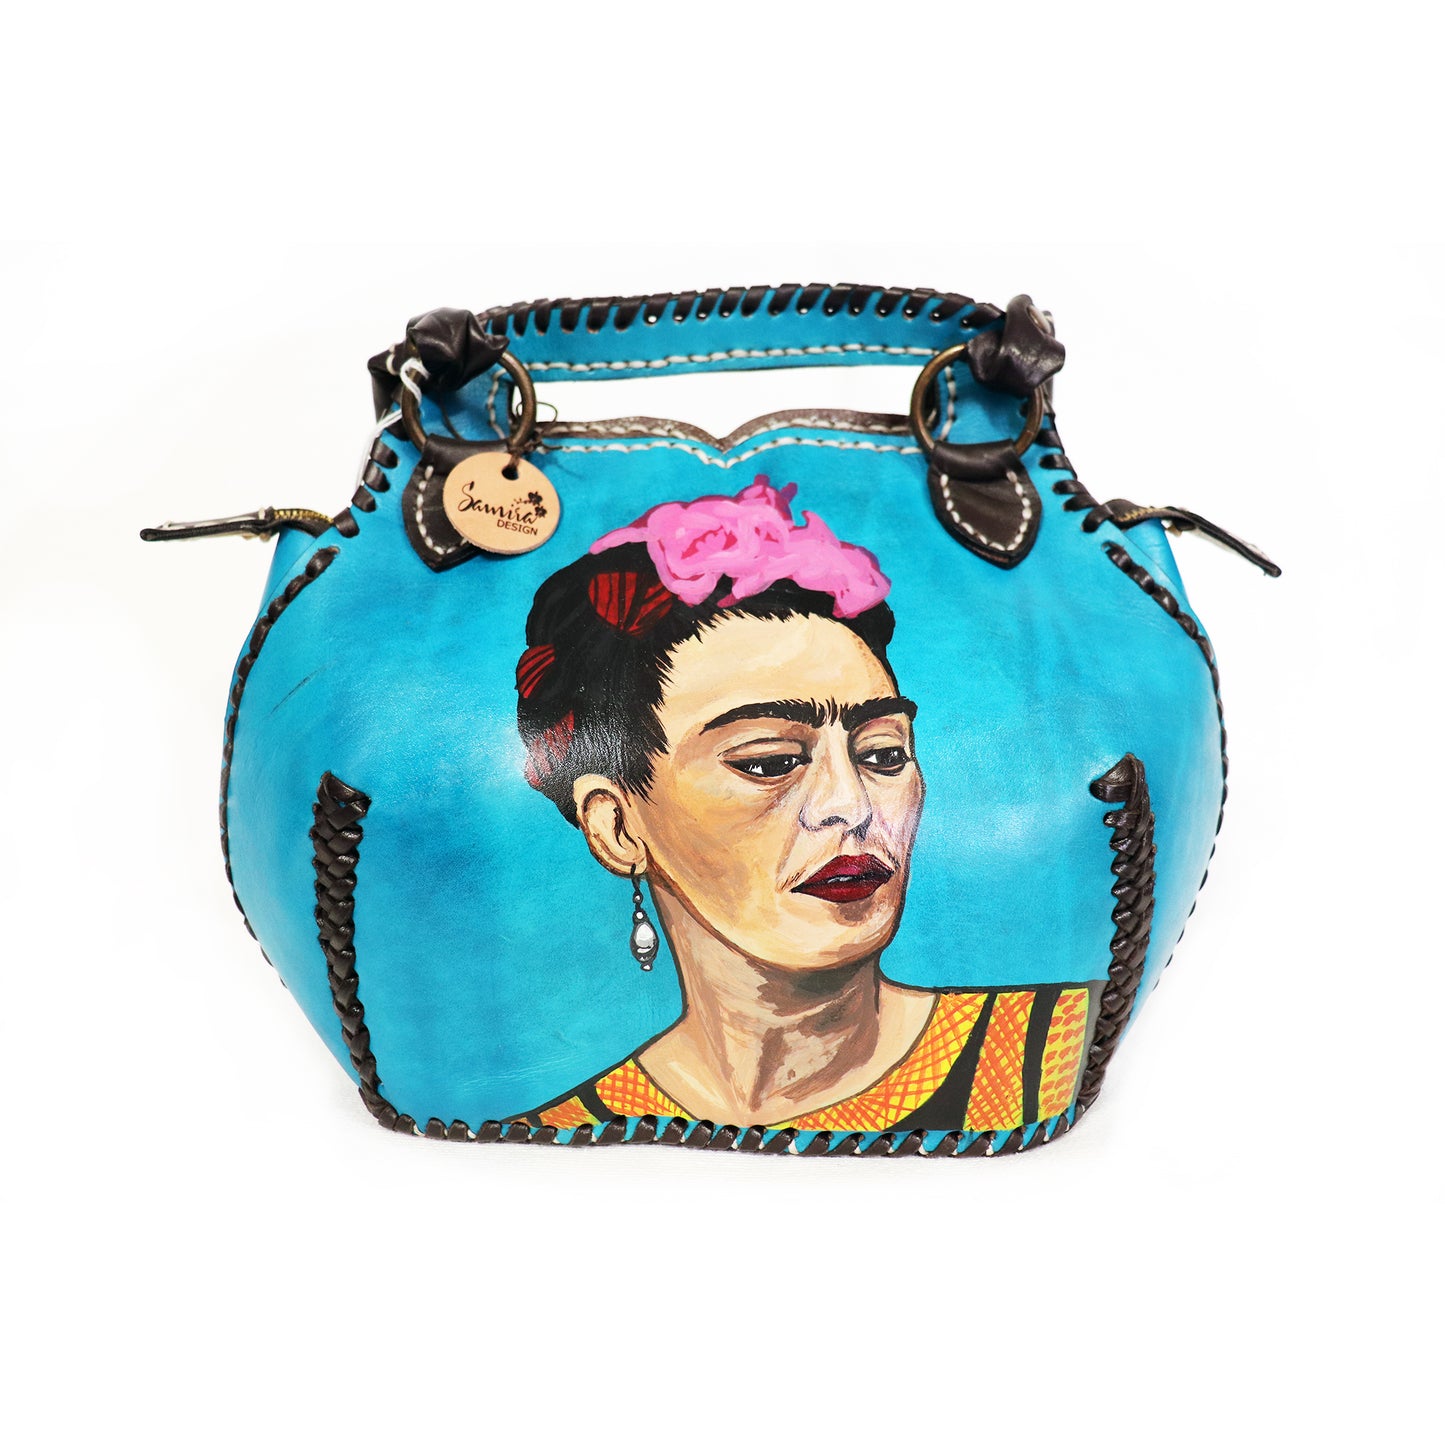 Frida Kahlo - Side Portrait Blue Handbag and Clutch set